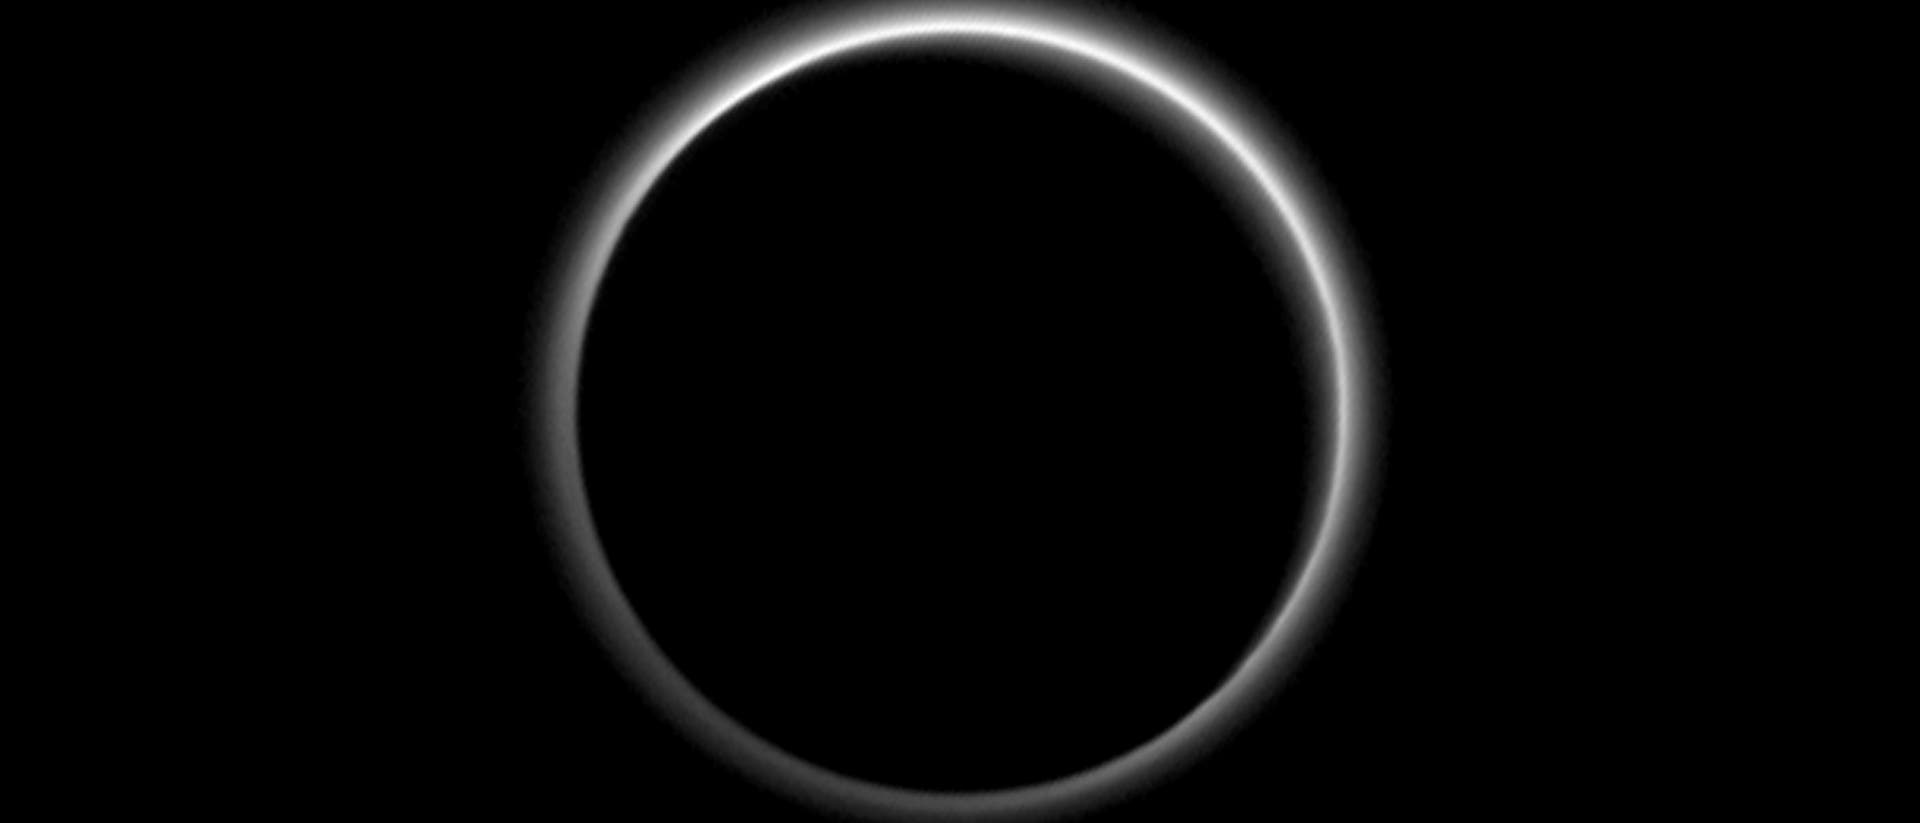 Atmosphärenhalo um den dunklen Pluto